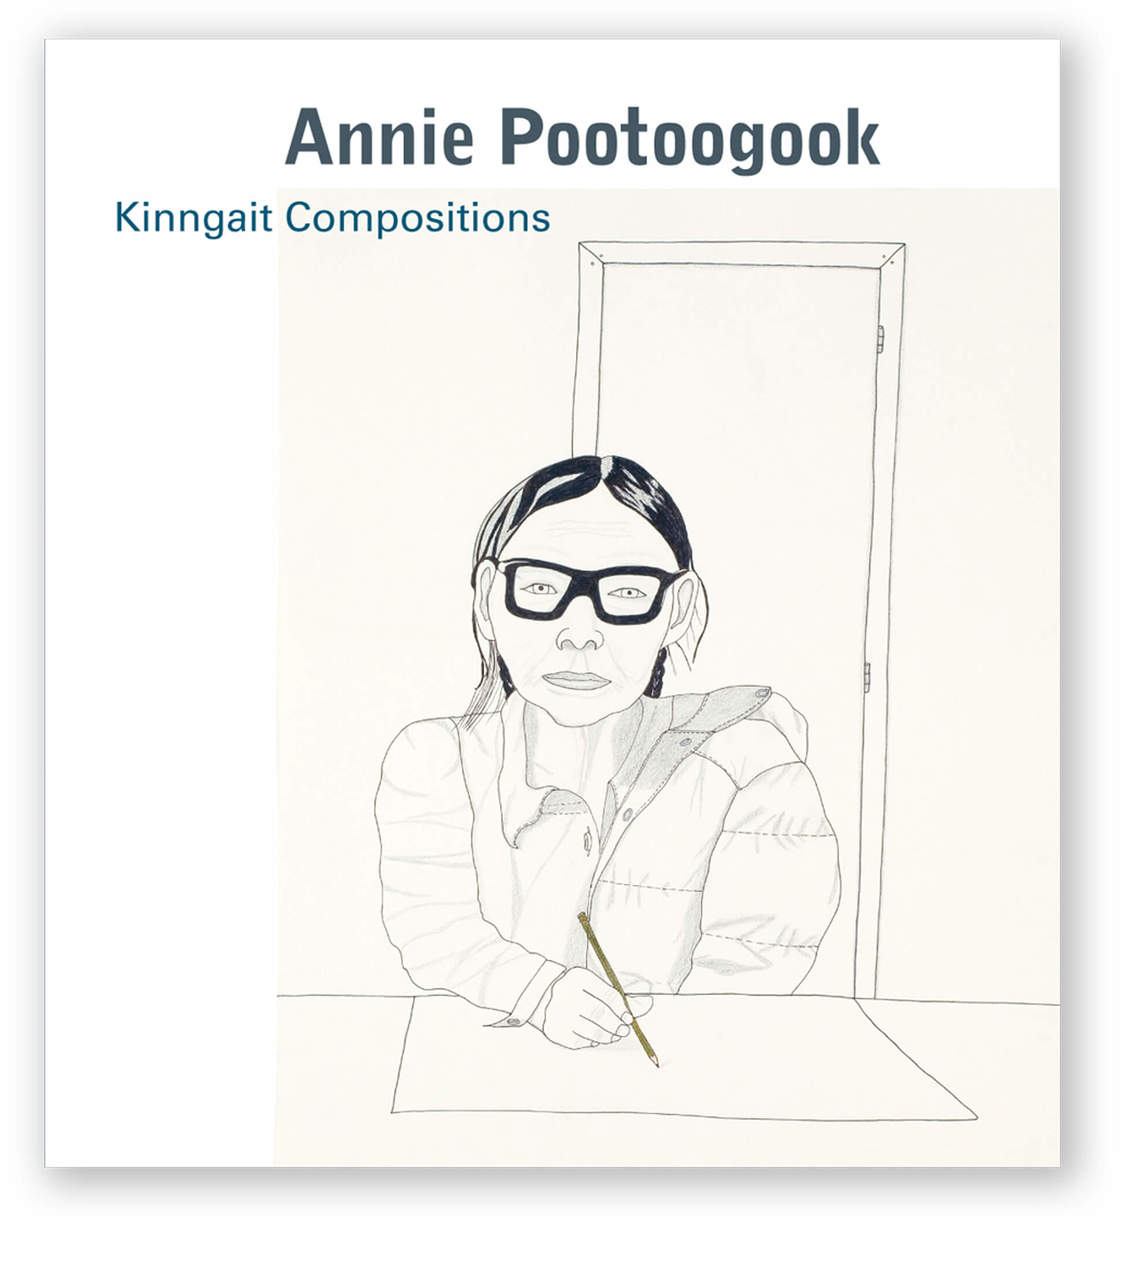 Couverture de Annie Pootoogook: Kinngait Compositions, 2011, de Jan Allen